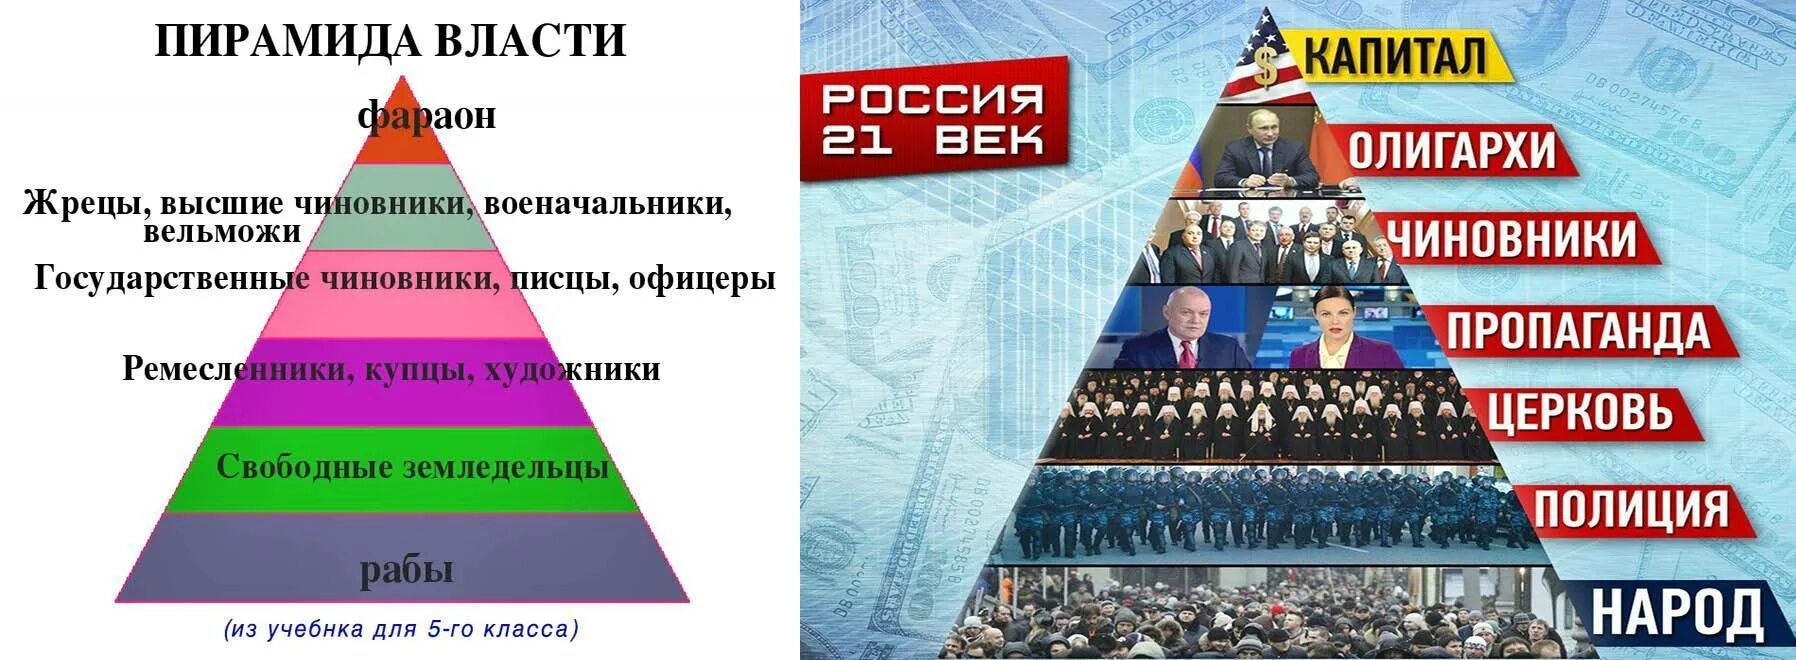 Влияние сильнее власти. Пирамида власти. Пиримала власти. Пирамида ВЛАСТB. Пирамида власти в России.